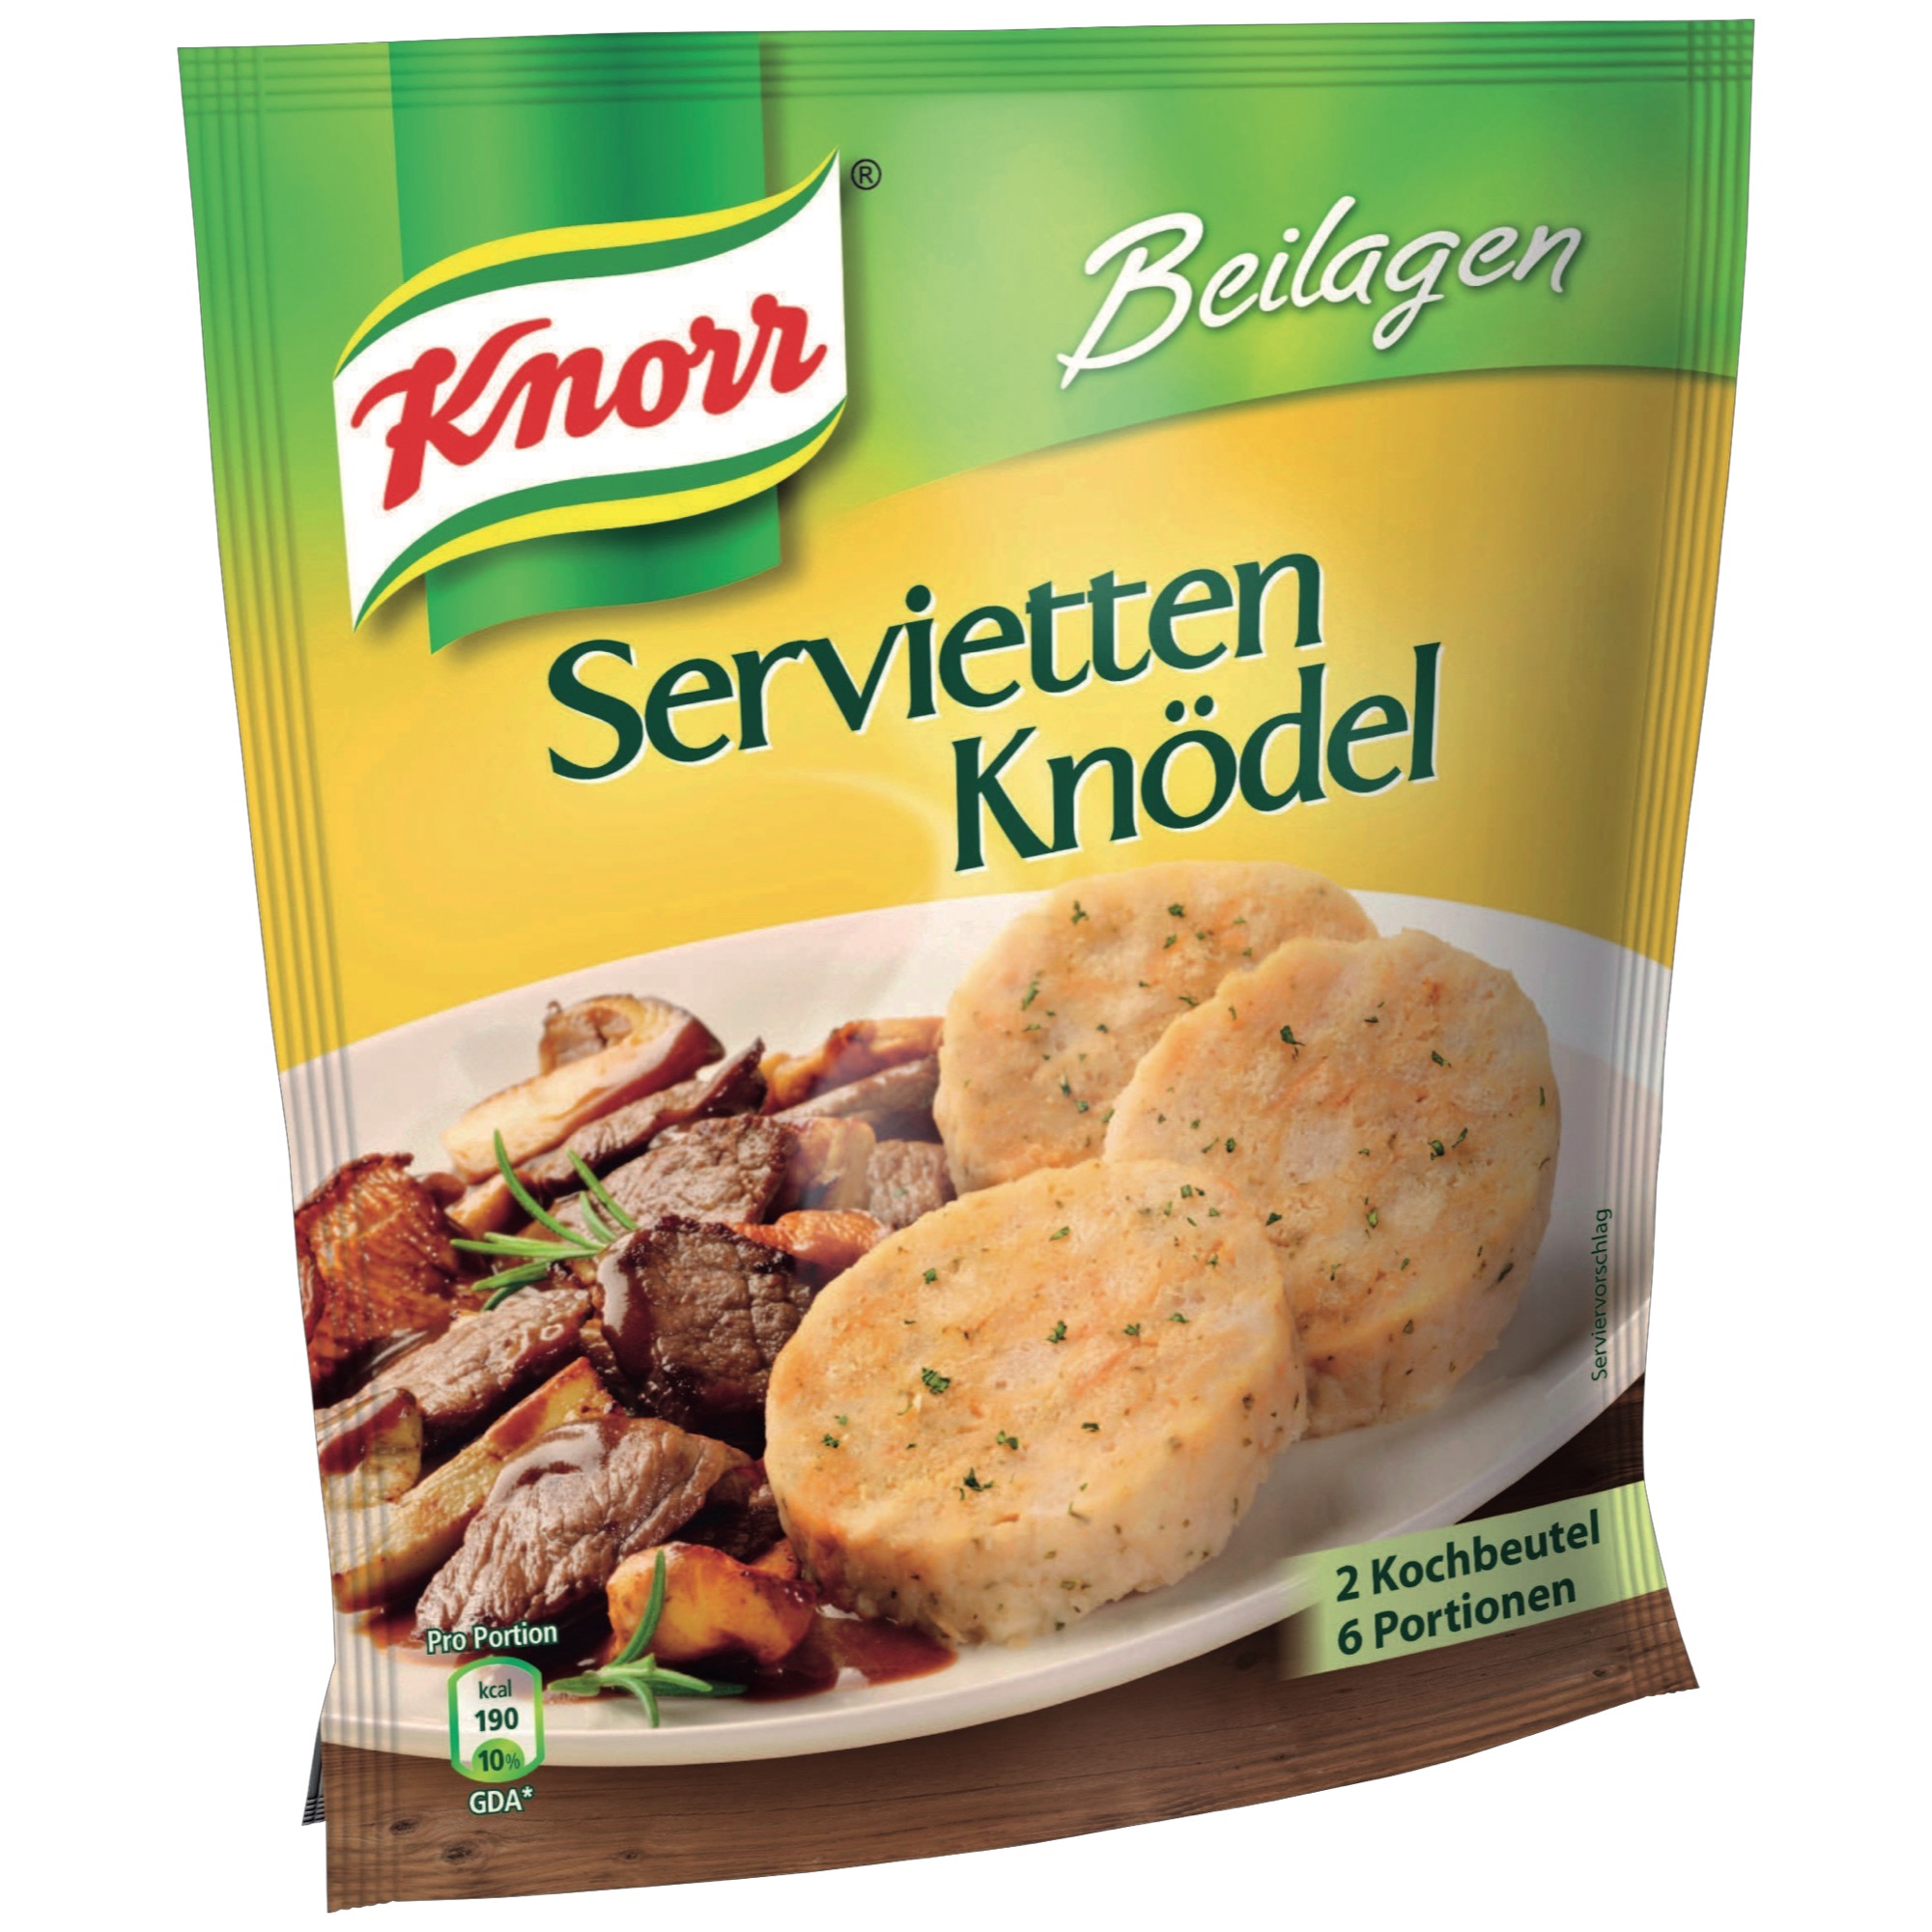 Knorr žemľové knedle ploché 250g